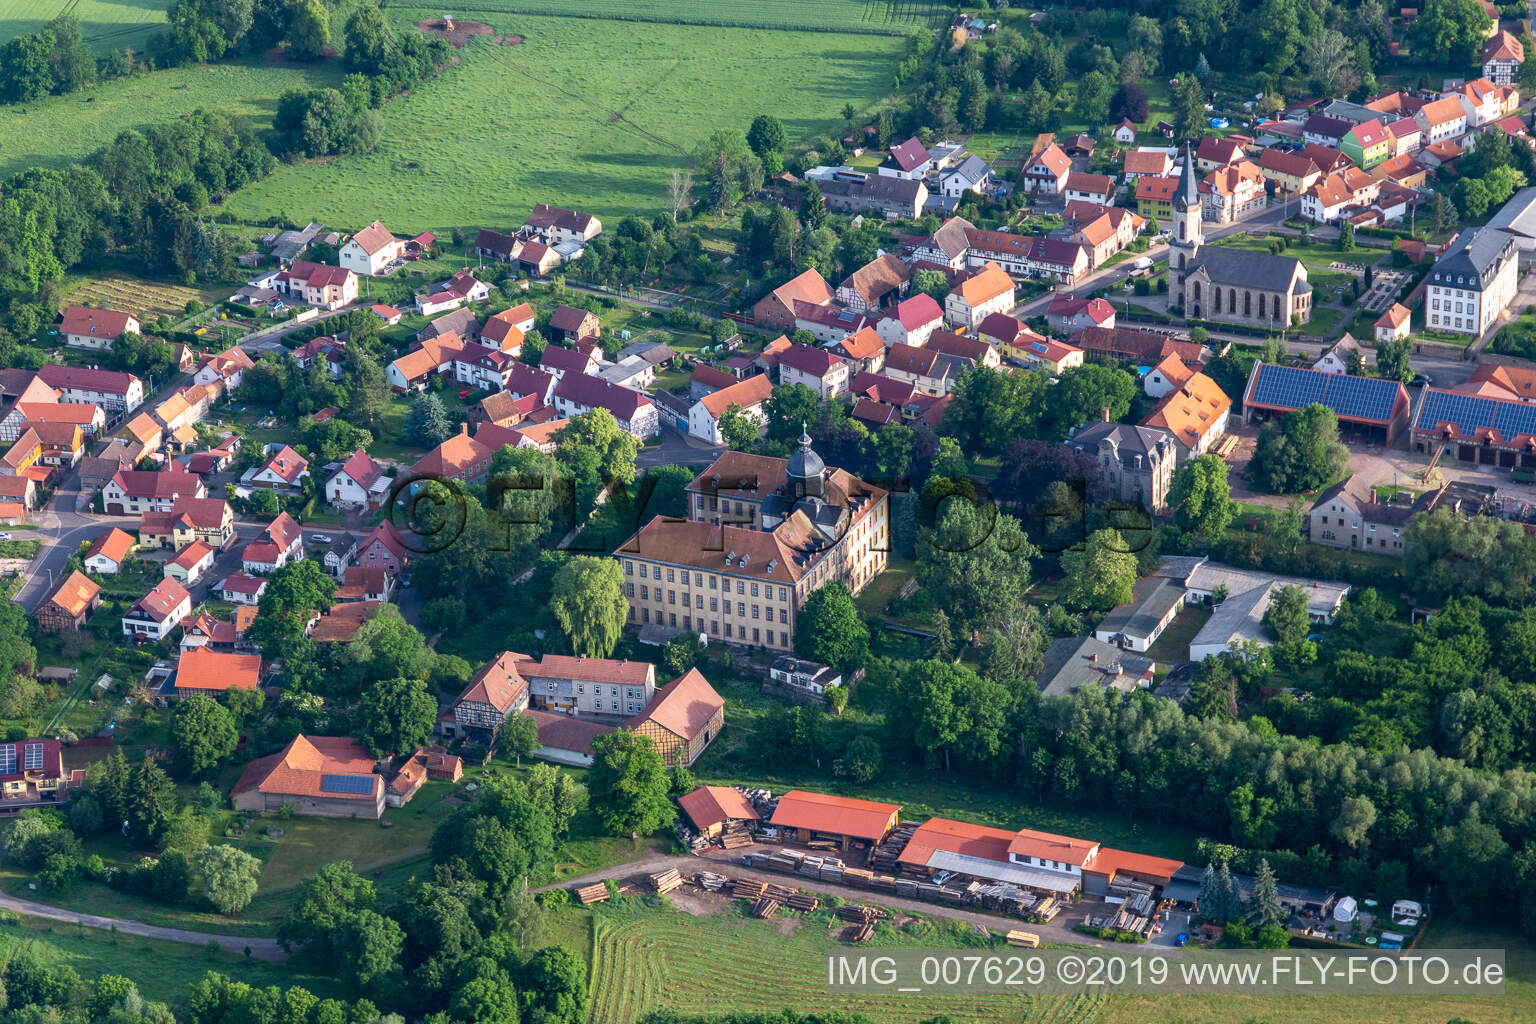 Vue aérienne de Vue sur la commune en bordure de champs agricoles et de zones agricoles à Friedrichswerth dans le département Thuringe, Allemagne